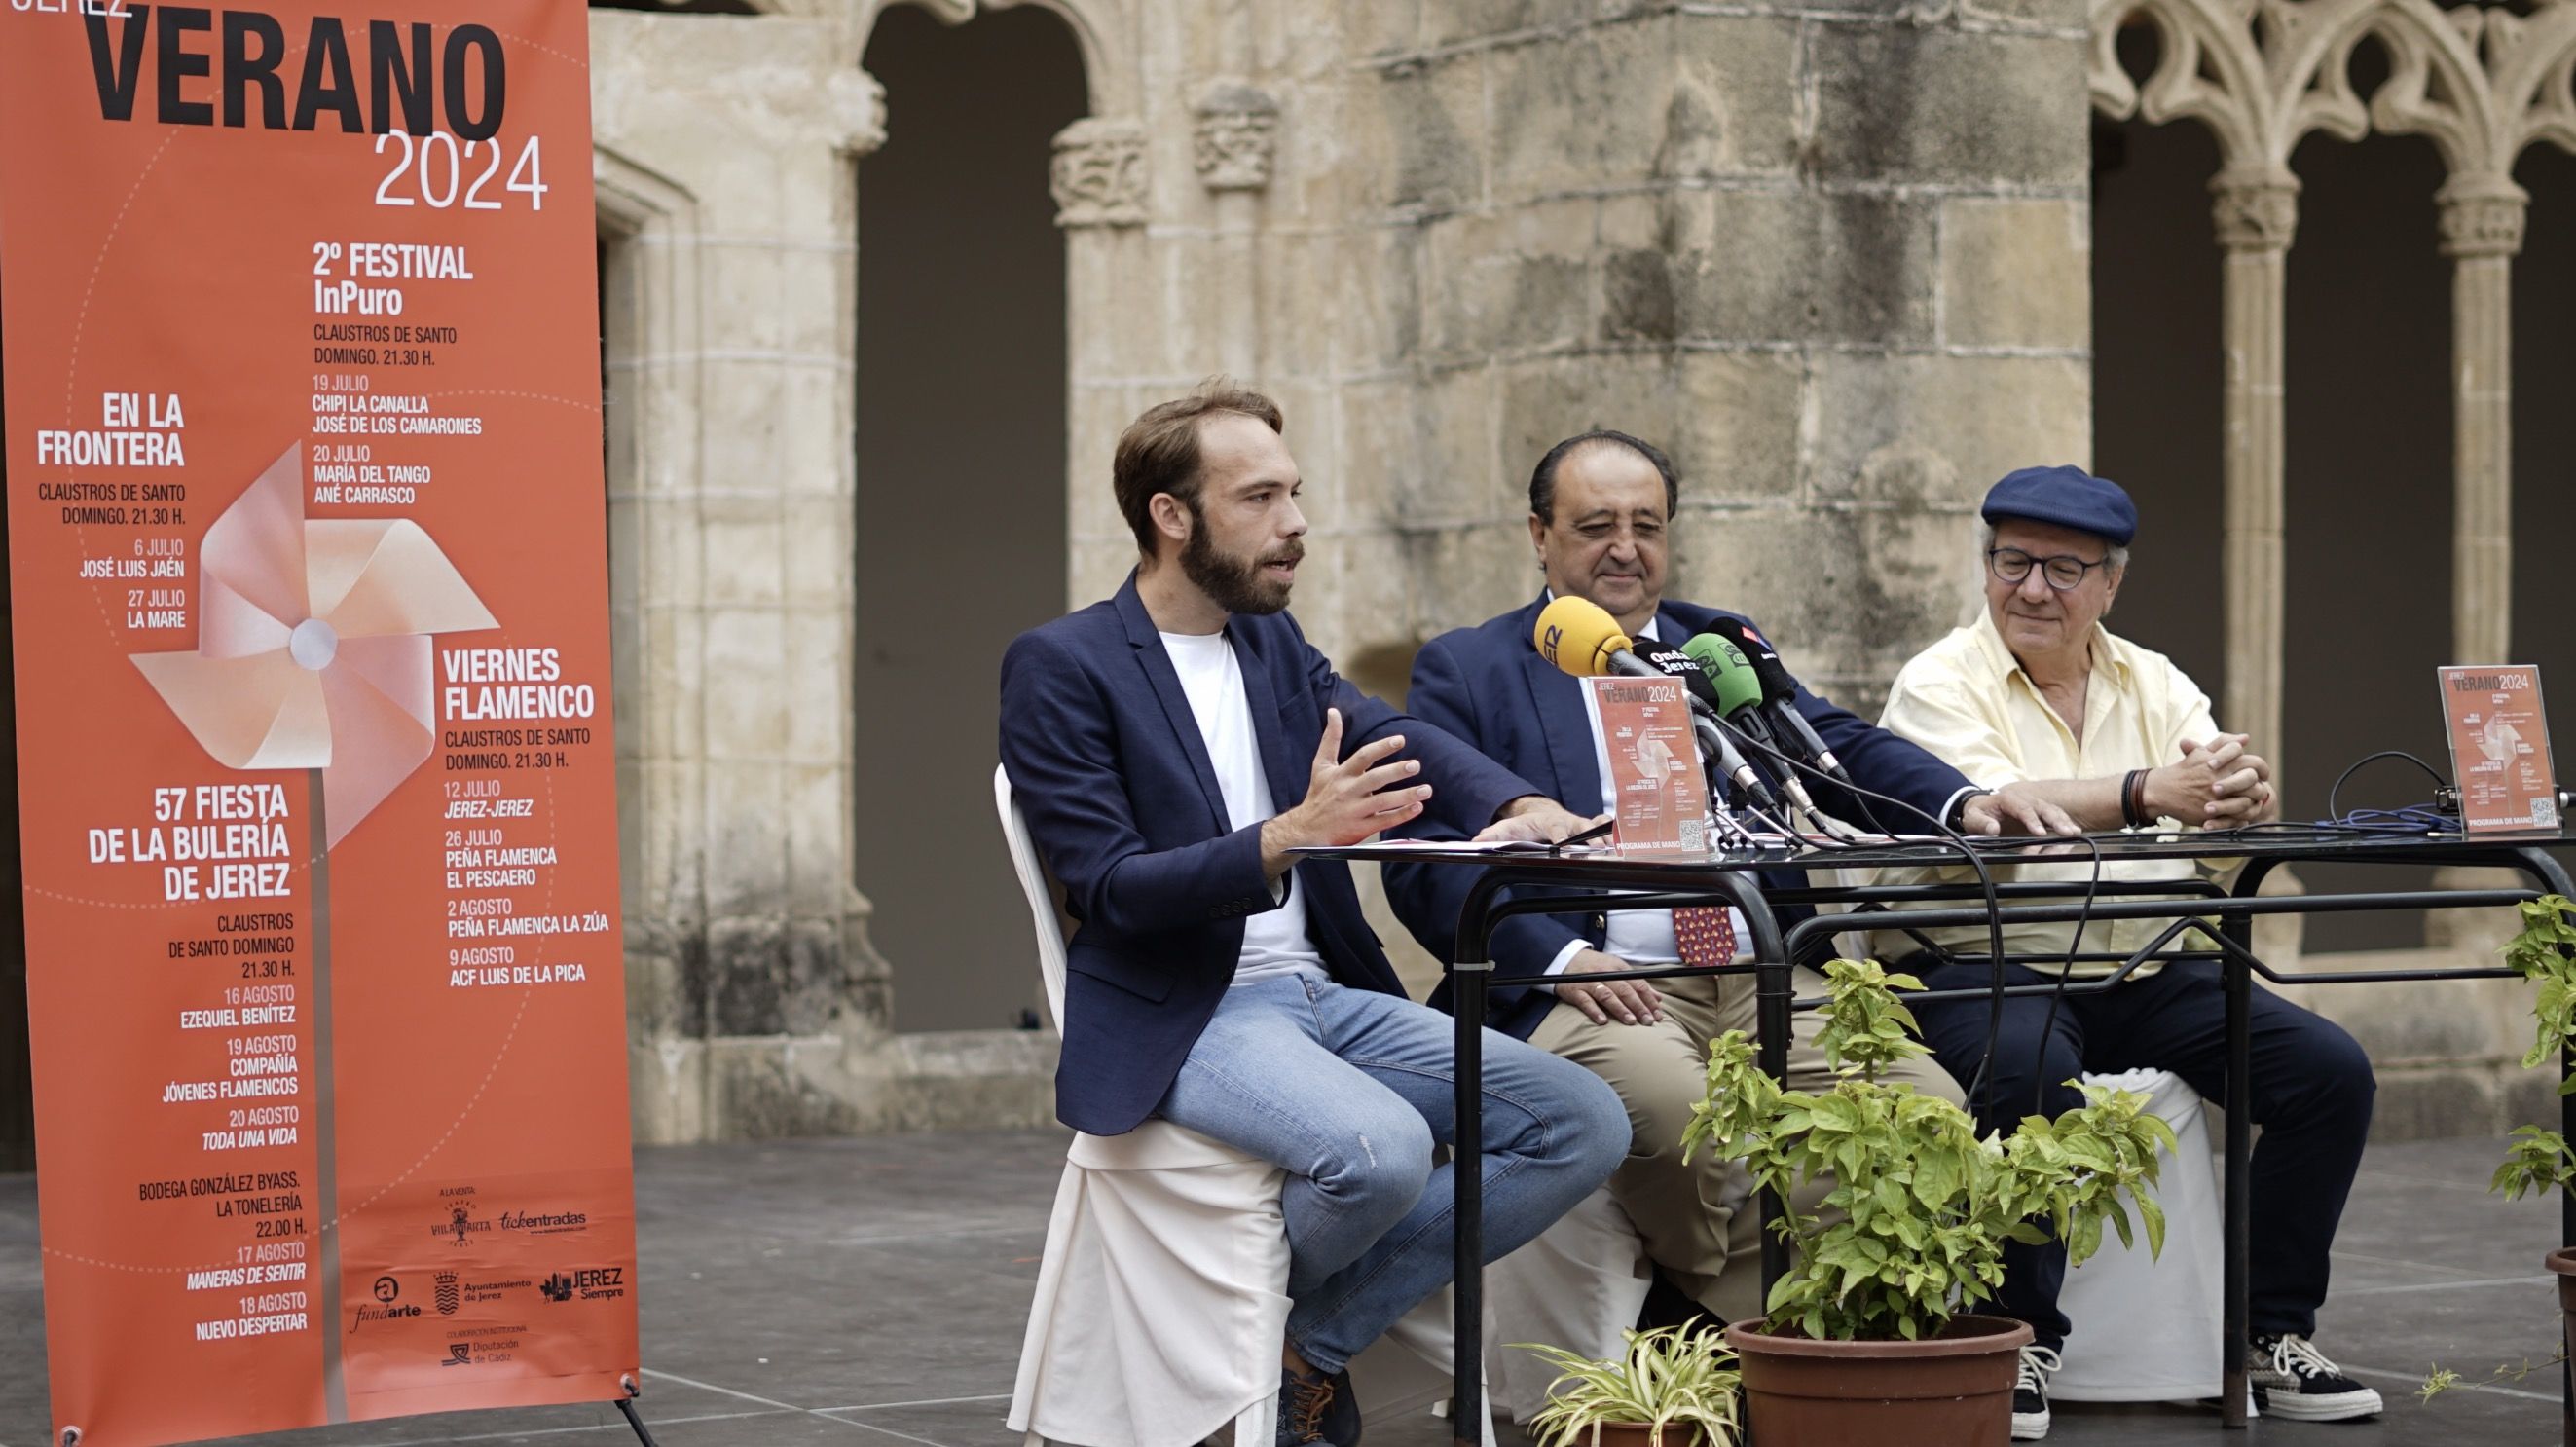 Momento de la presentación del programa de contenidos de la Fiesta de la Bulería de Jerez, los Viernes Flamencos, el Festival InPuro y el ciclo En la Frontera en Los Claustros de Santo Domingo.